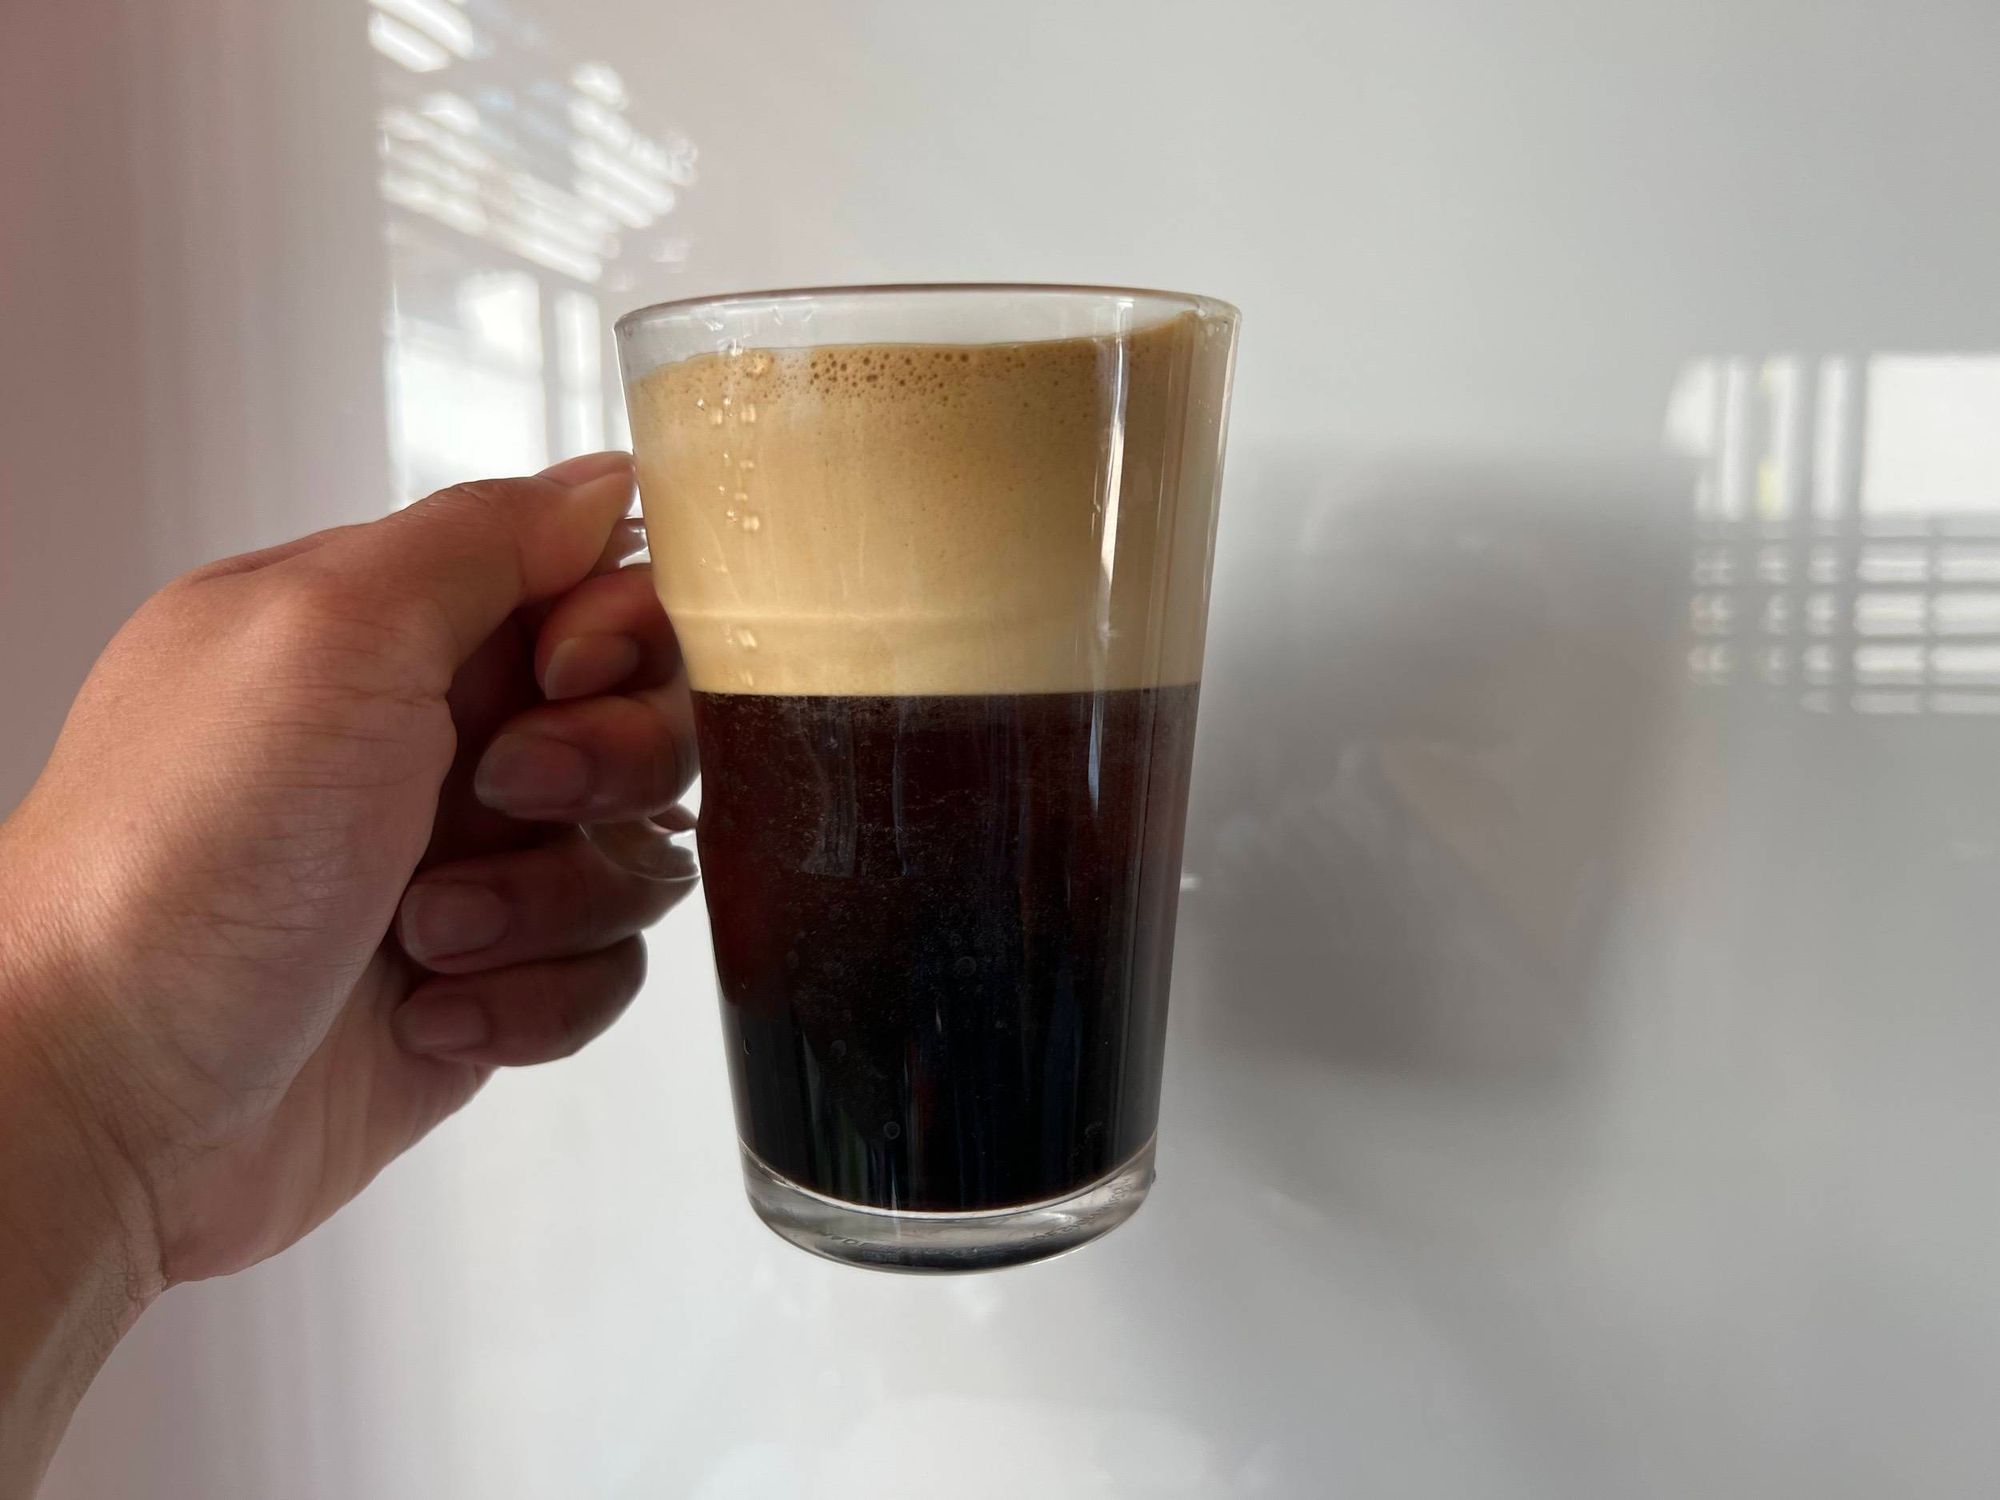 รีวิว Nespresso Vertuo Next เครื่องทำกาแฟแคปซูลใหม่แบบสับ Nespresso